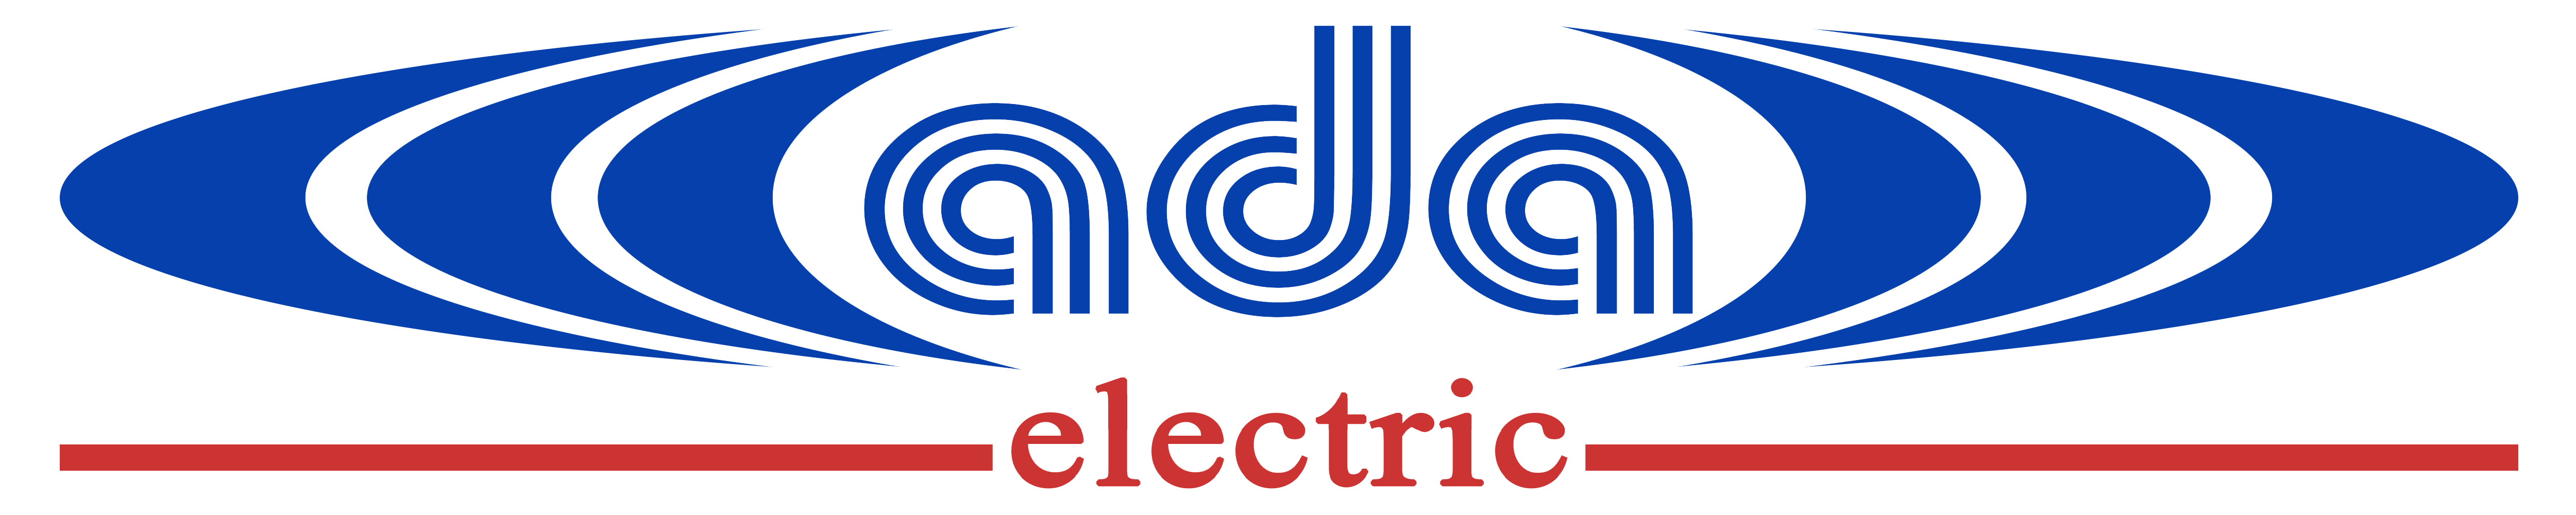 www.ada-electric.ro